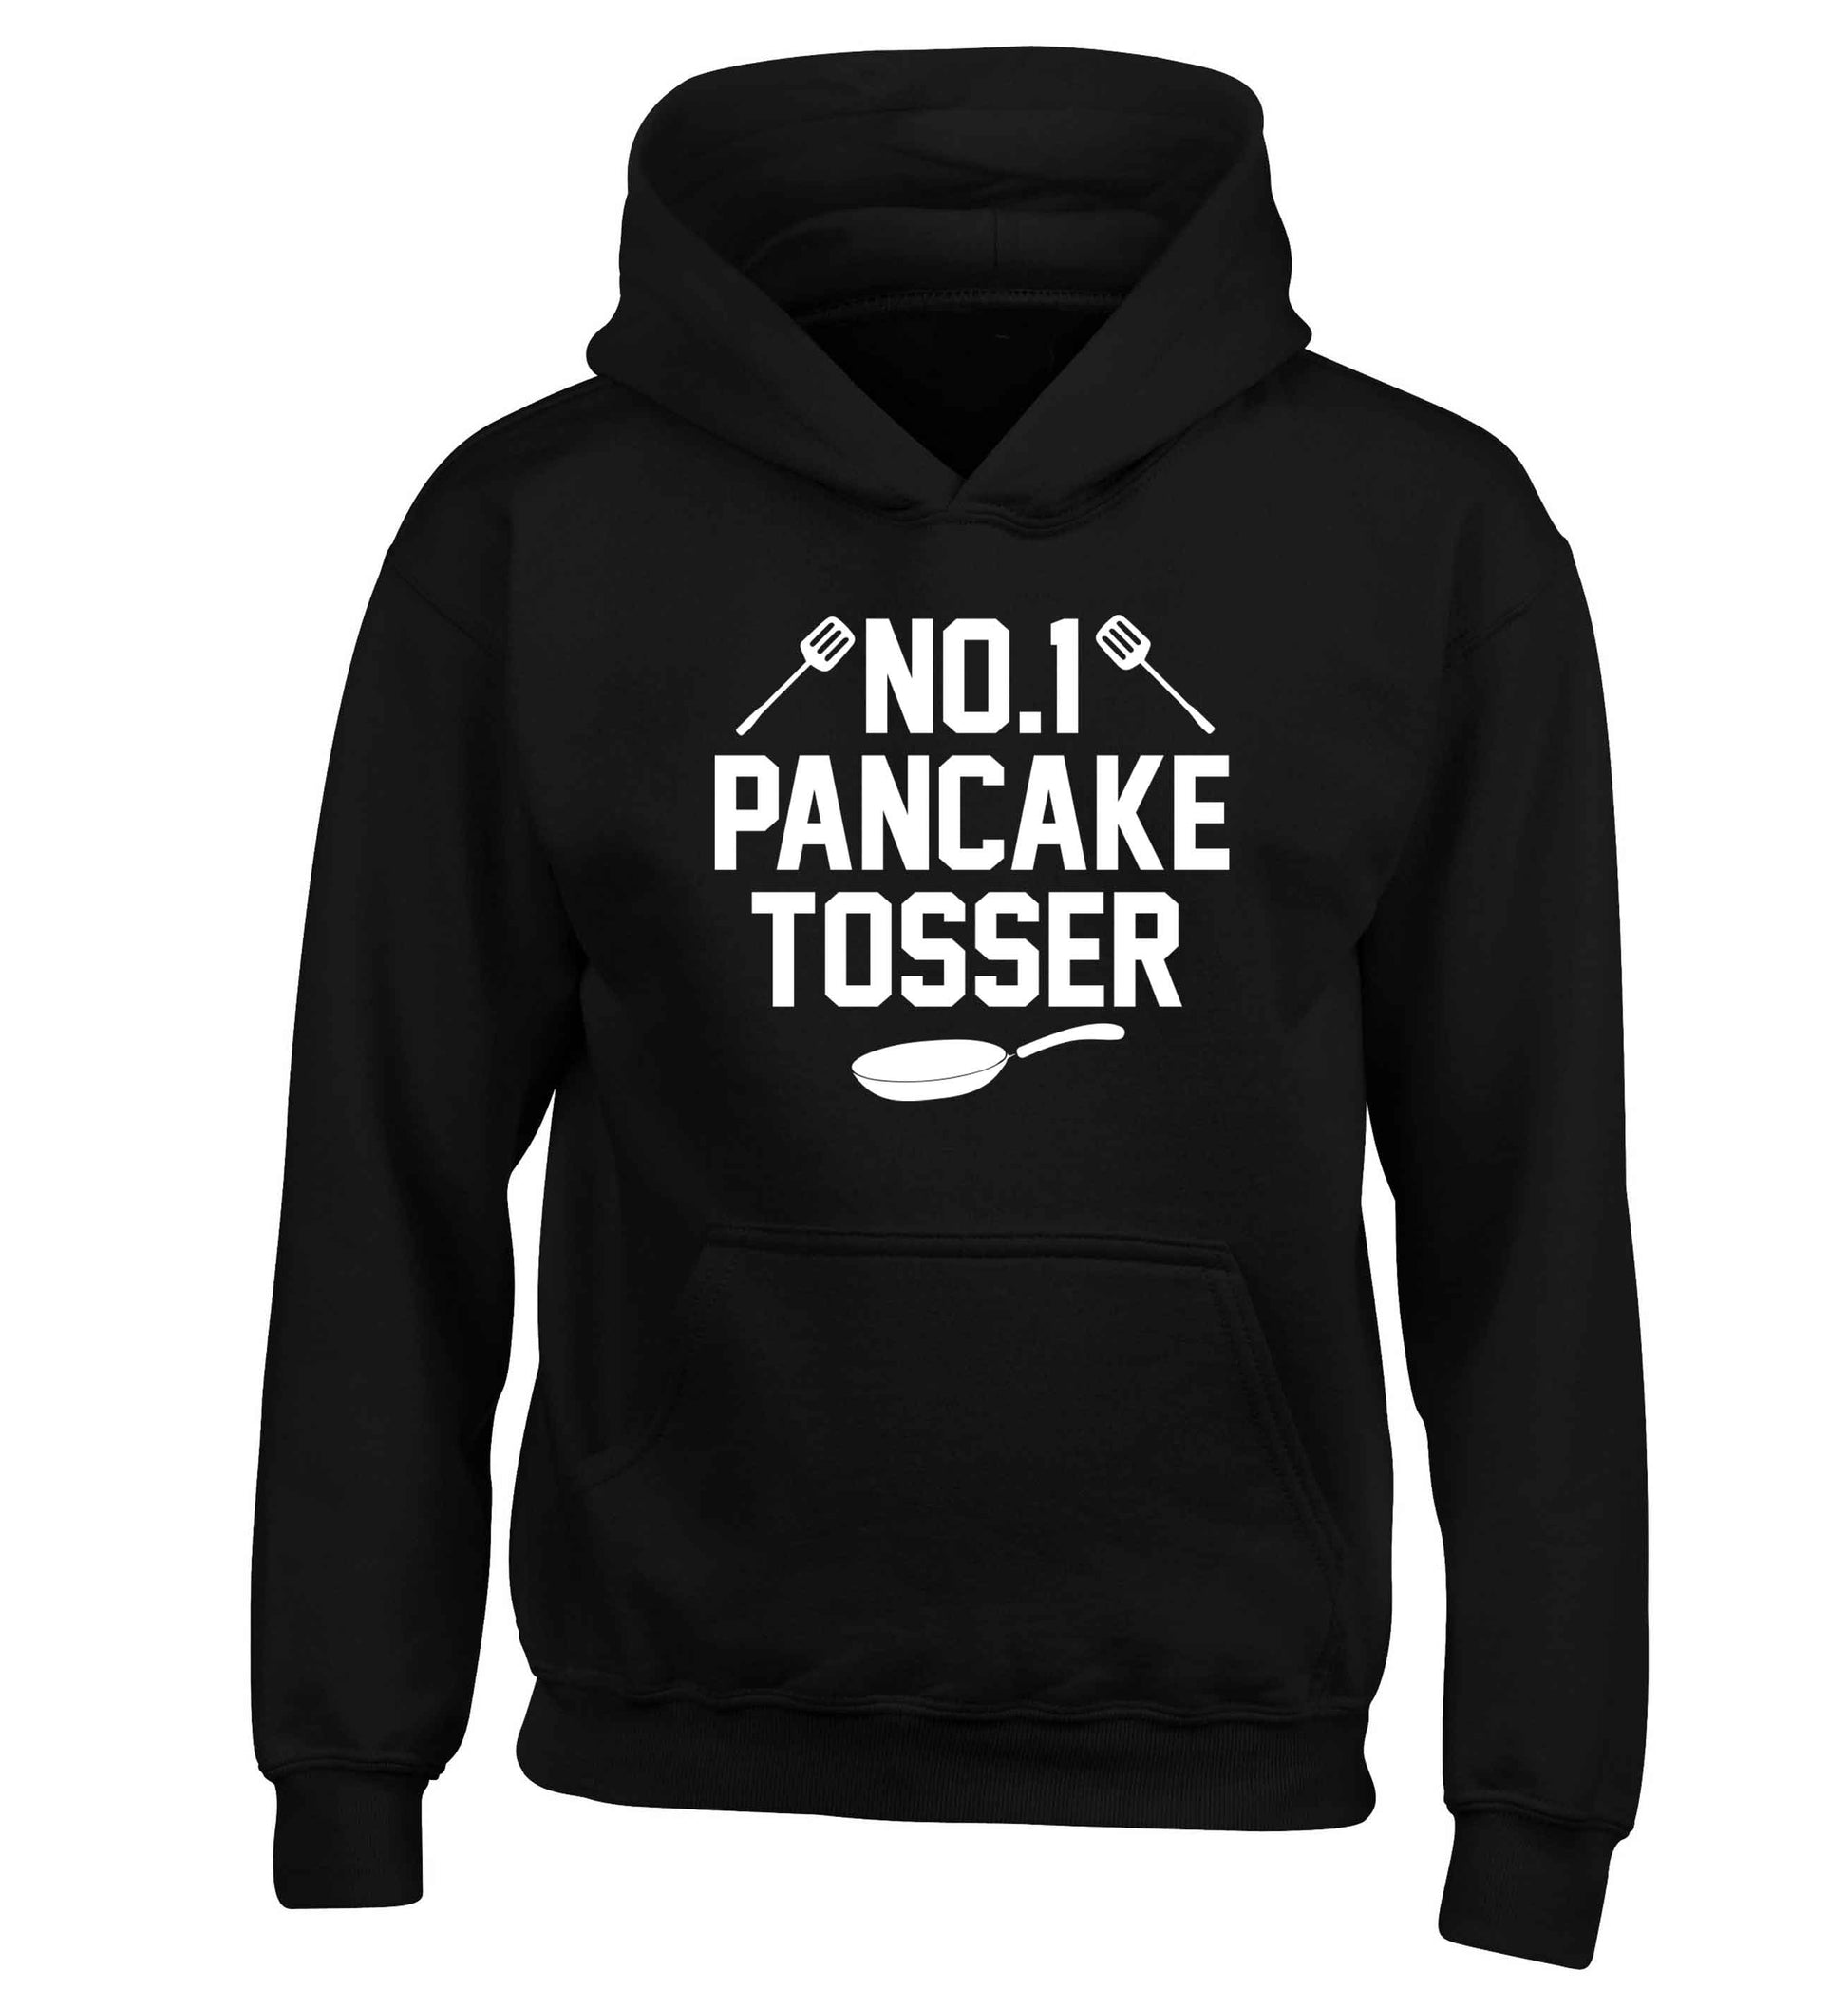 No.1 Pancake tosser children's black hoodie 12-13 Years